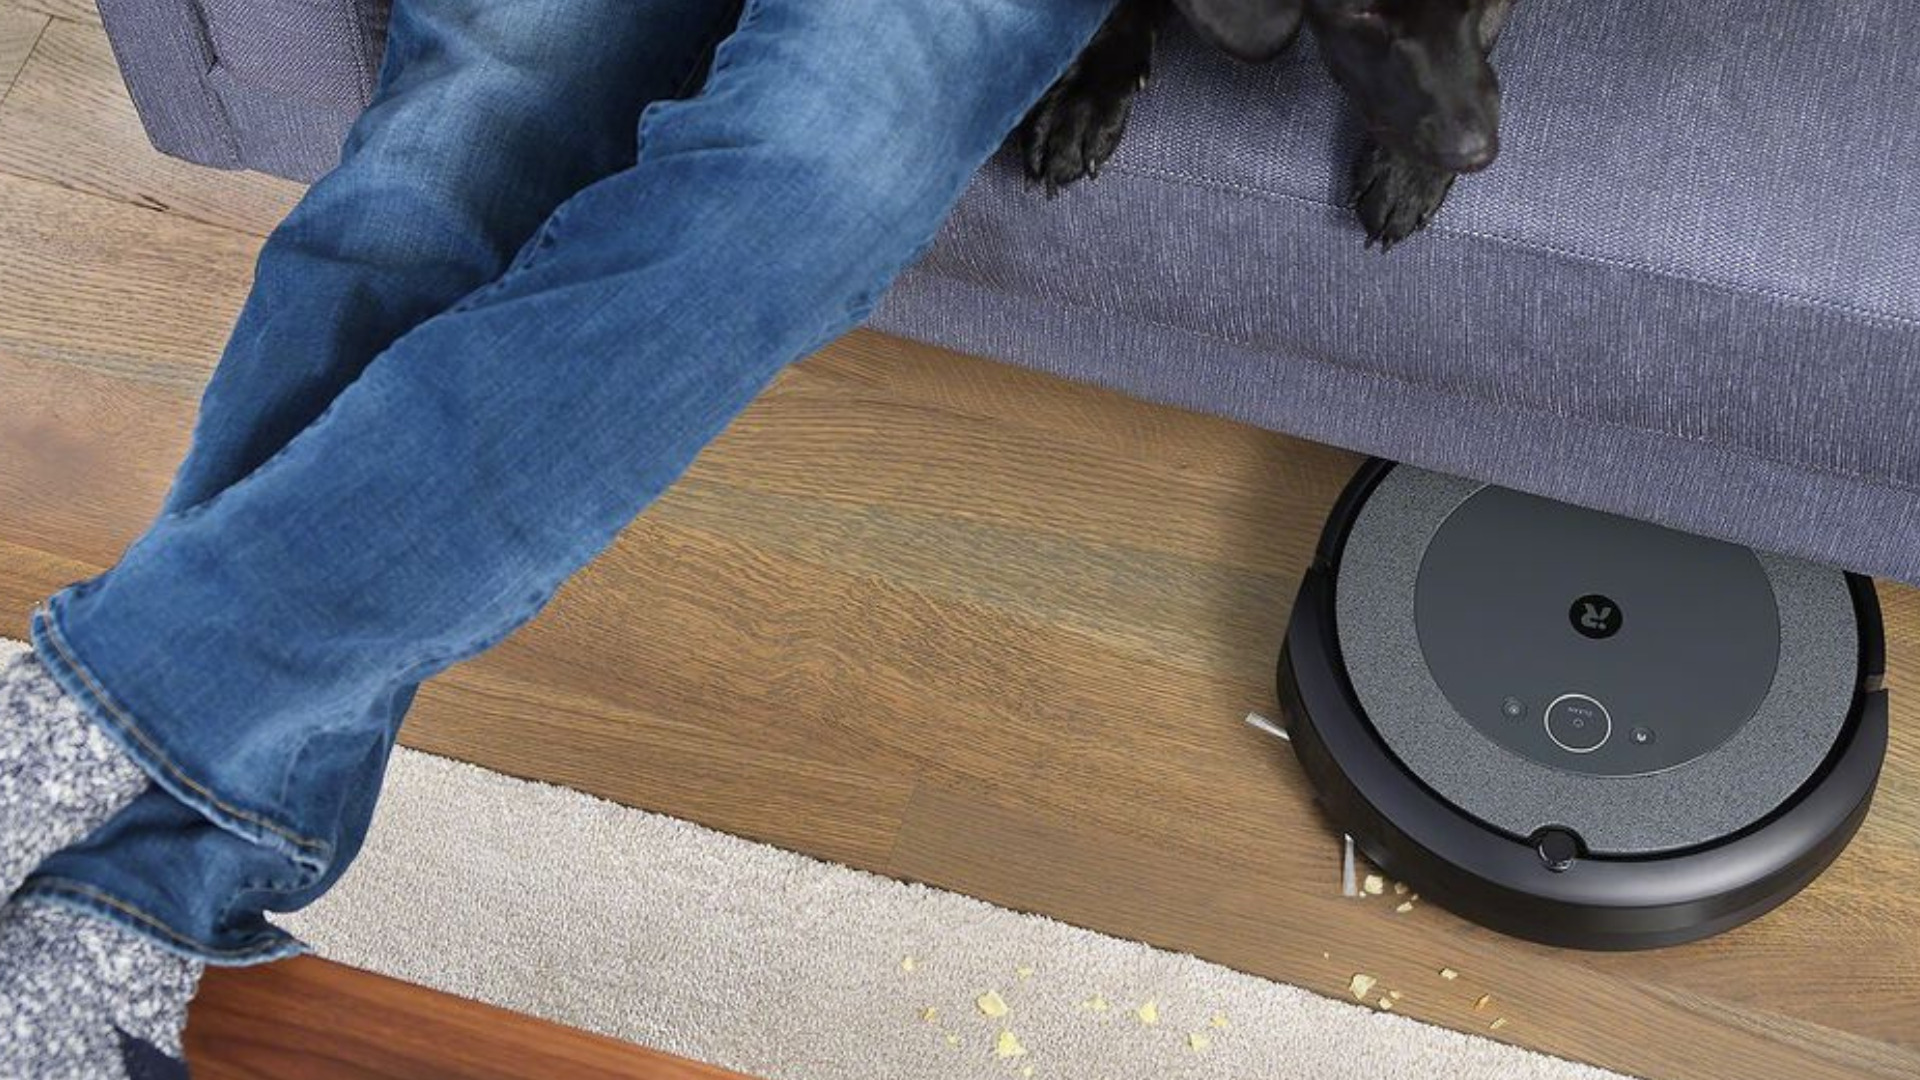 Le Roomba i5+ et sa station de vidage perdent une centaine d'euros